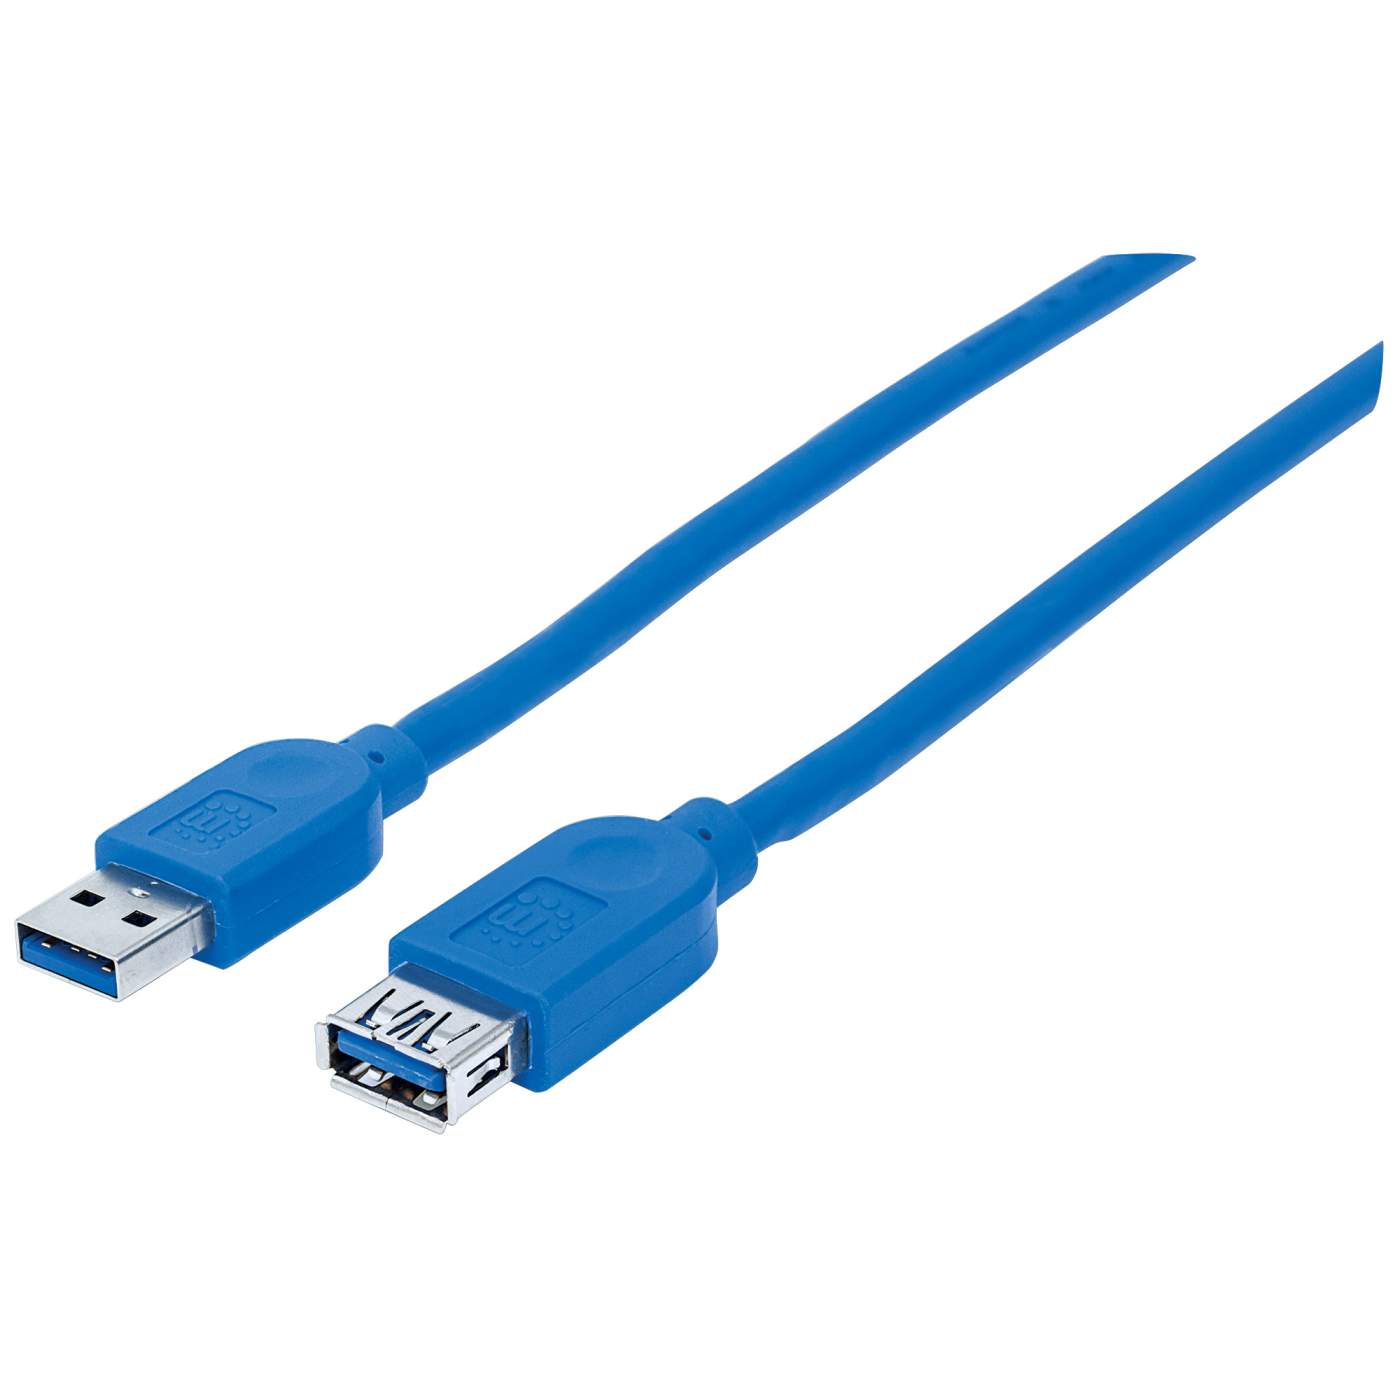 Active - Cable alargador USB 3.0 (49.2 ft)